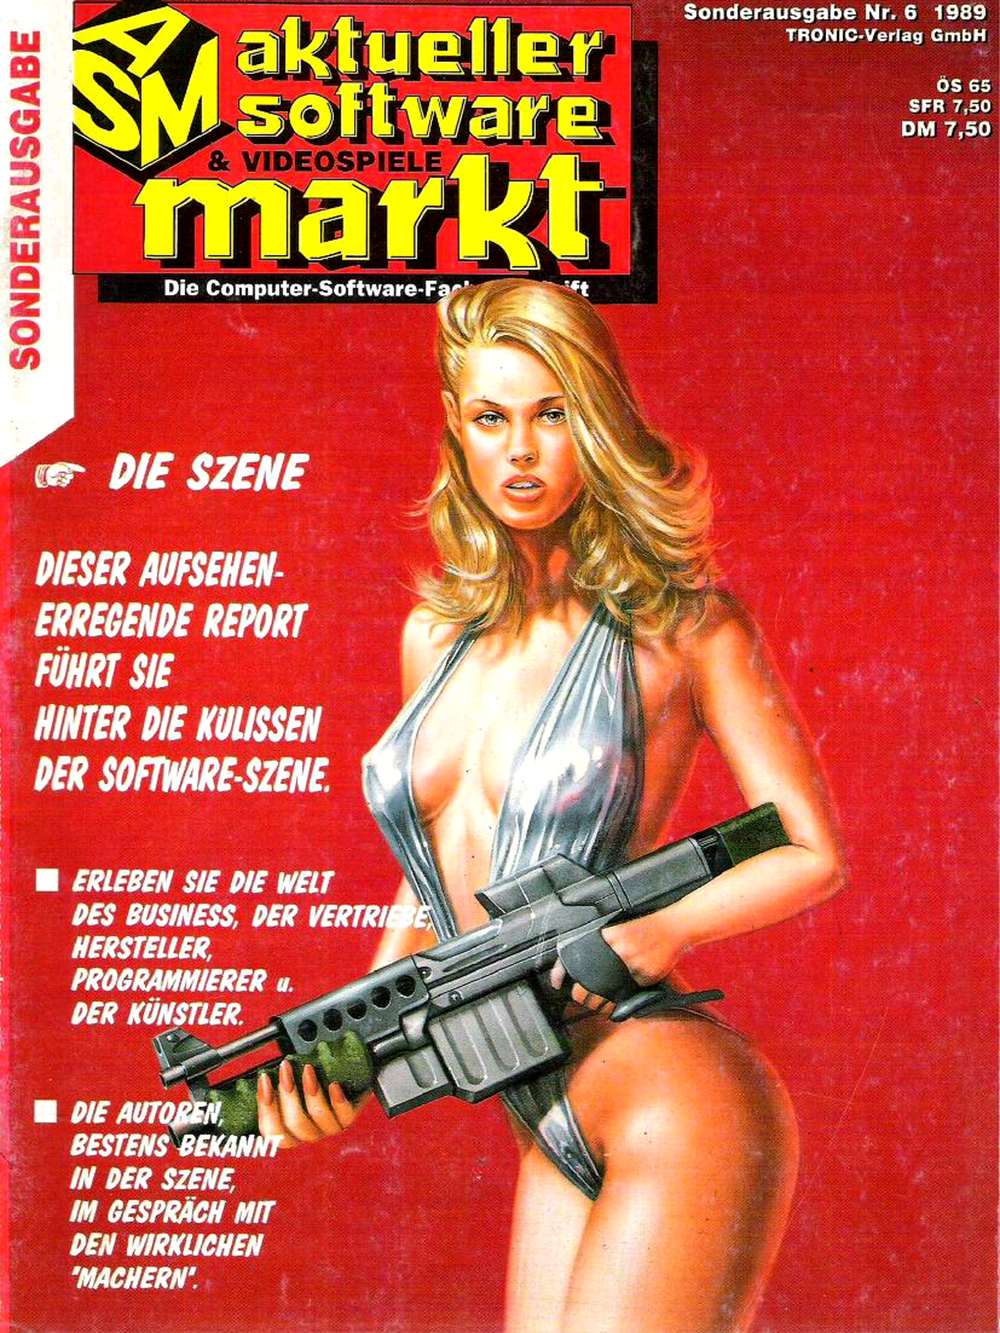 Aktueller Software Markt - Sonderausgabe 1989.06_0000